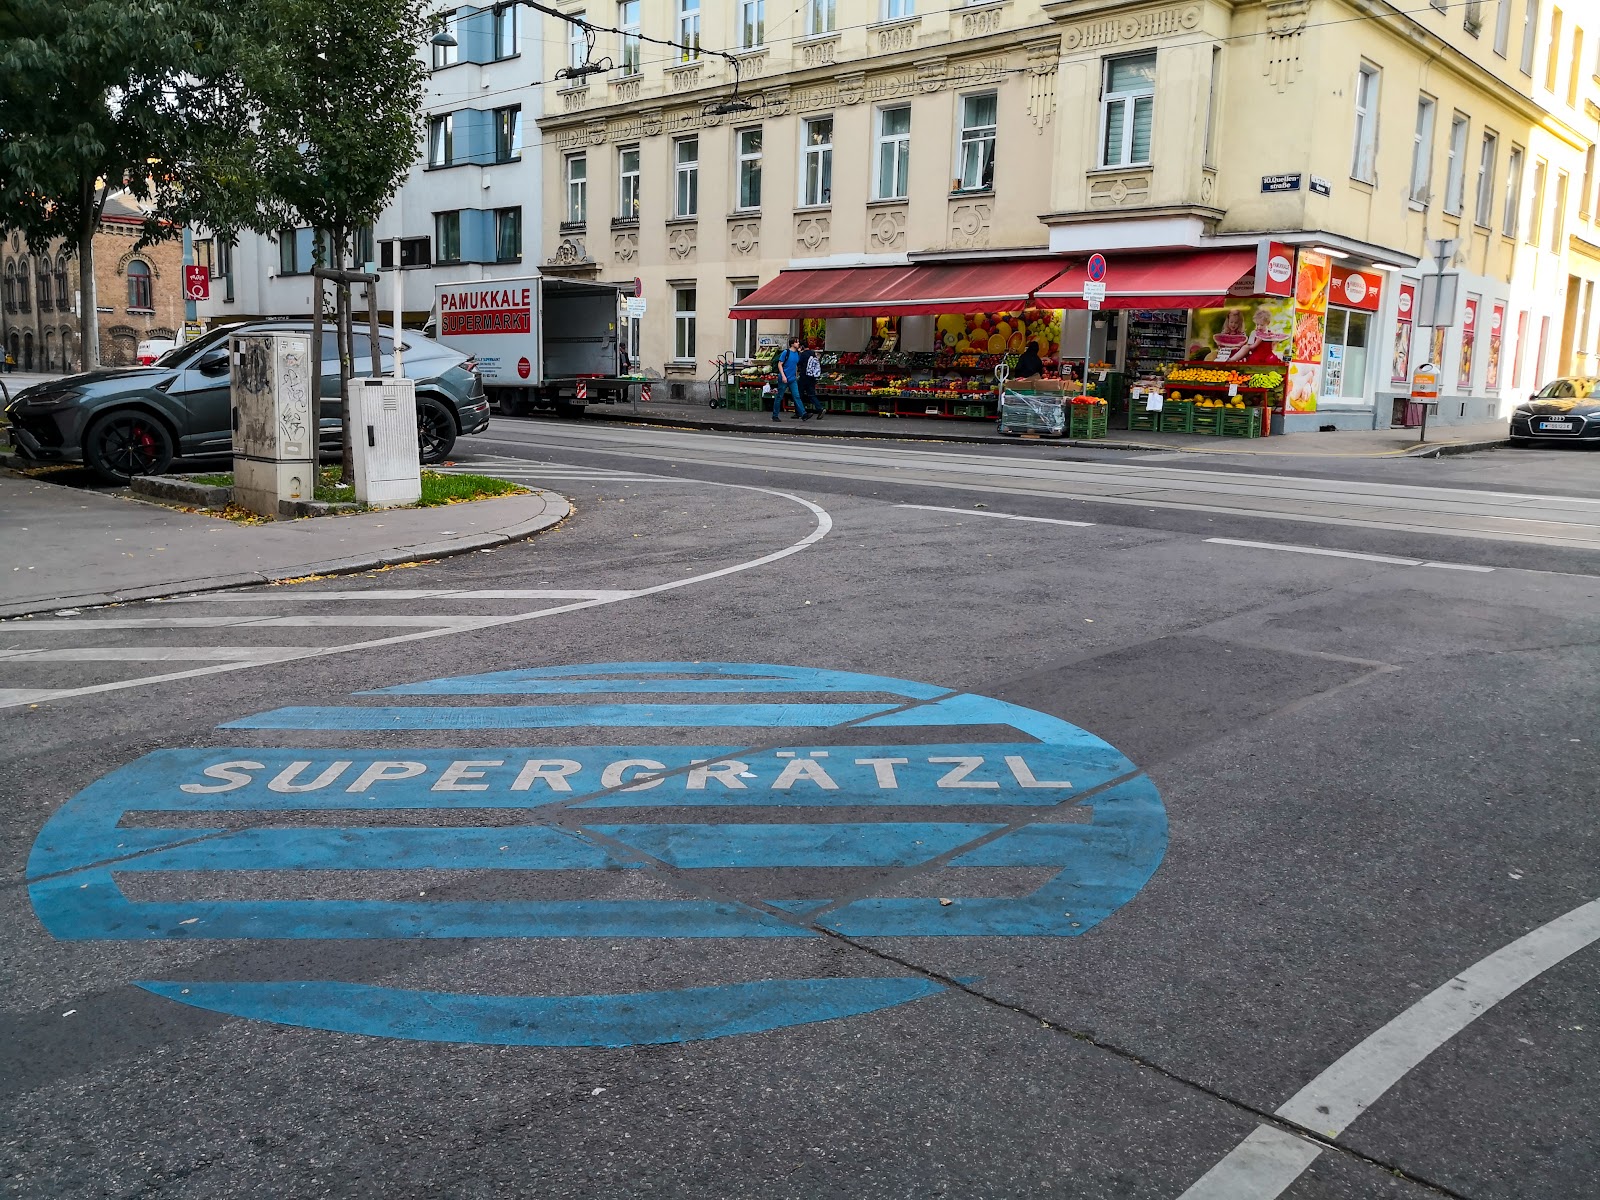 Das Supergrätzl in Wien. Eine fette Bodenmarkierung verdeutlicht es.